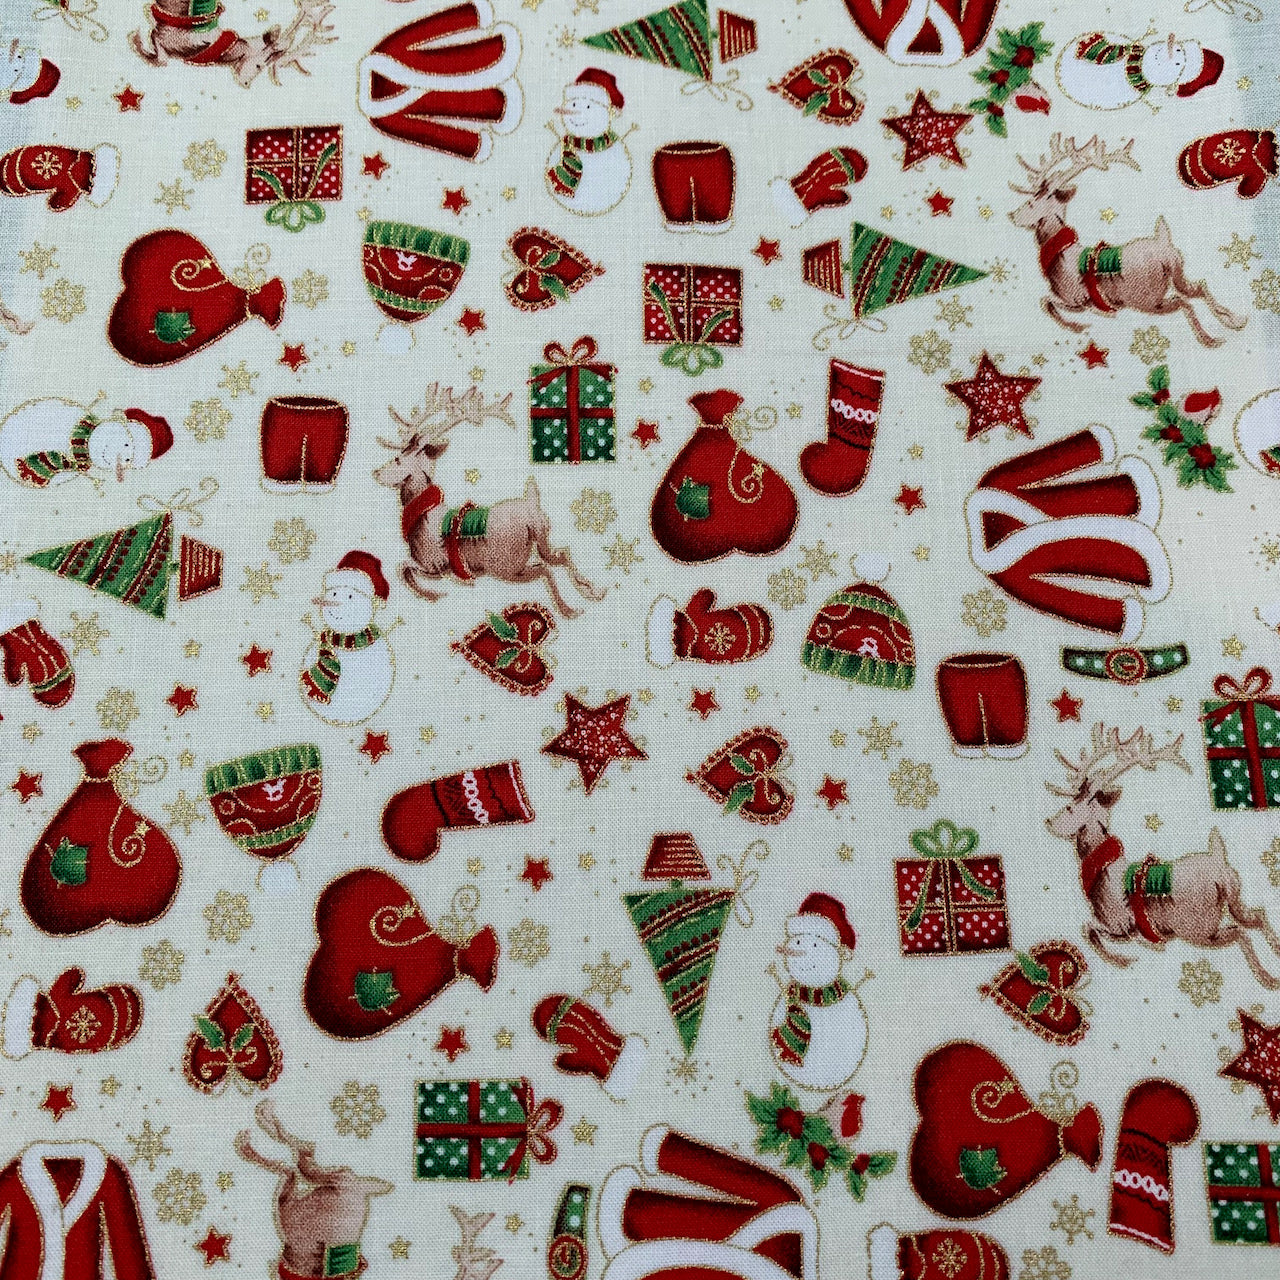 Fabric Felt - All things Christmas